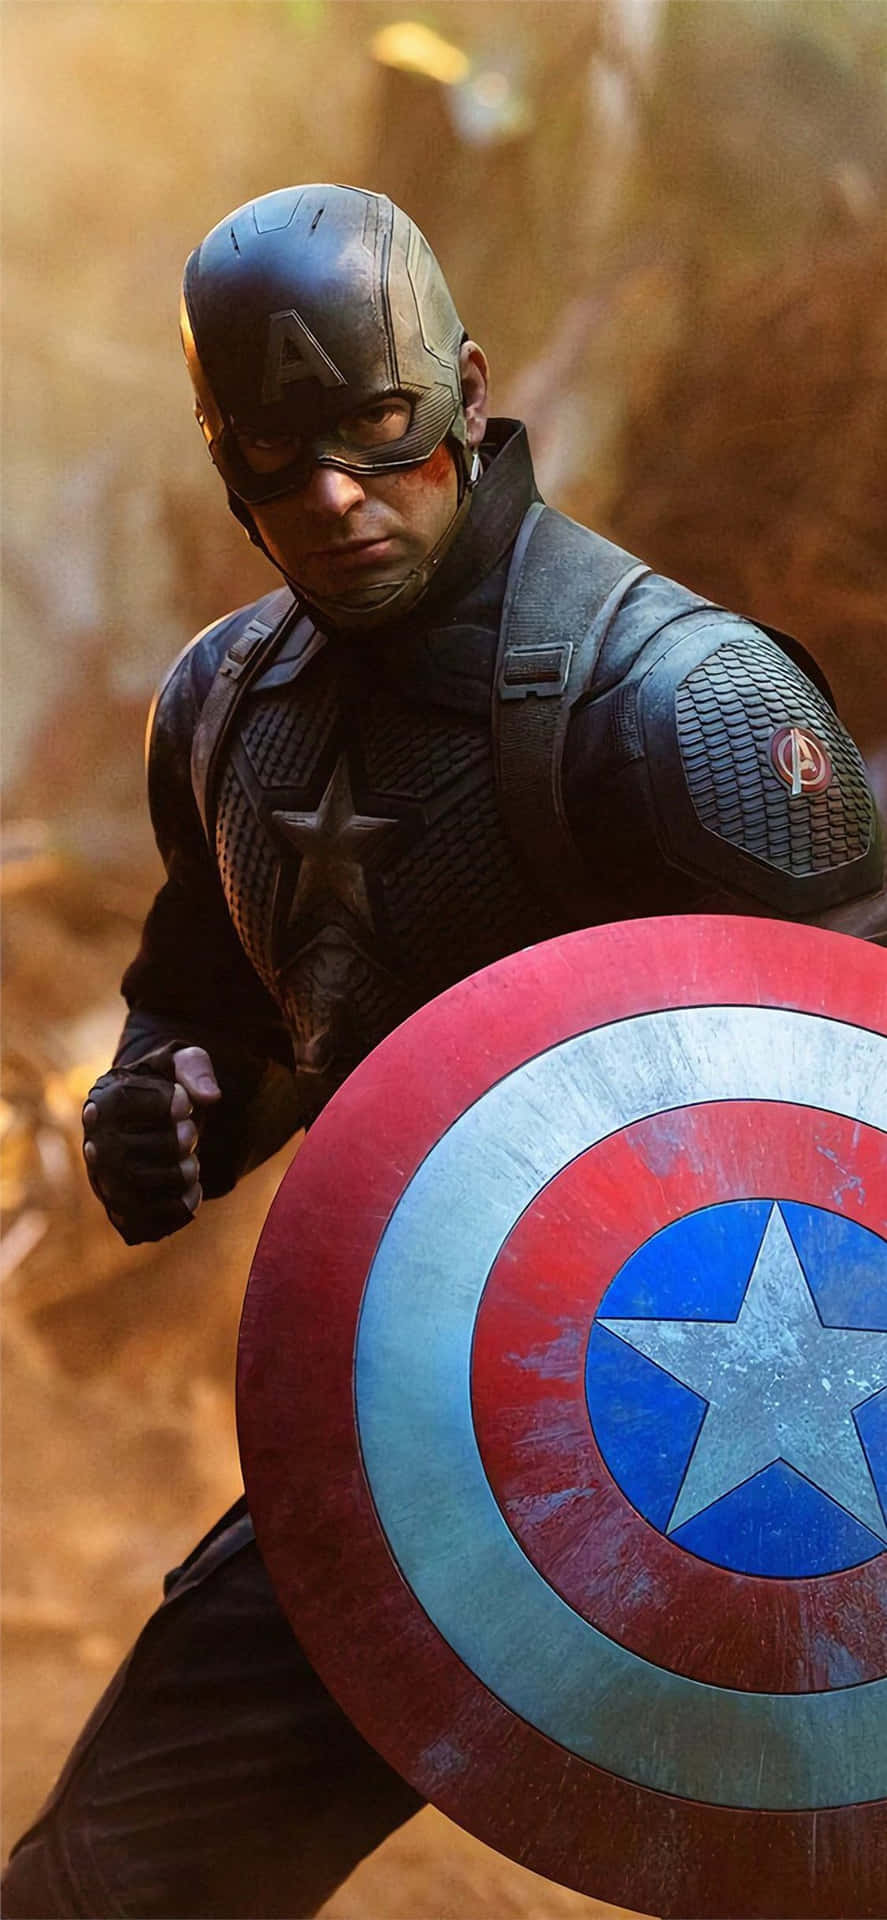 Captain America in Avengers: Endgame (4K) Wallpaper